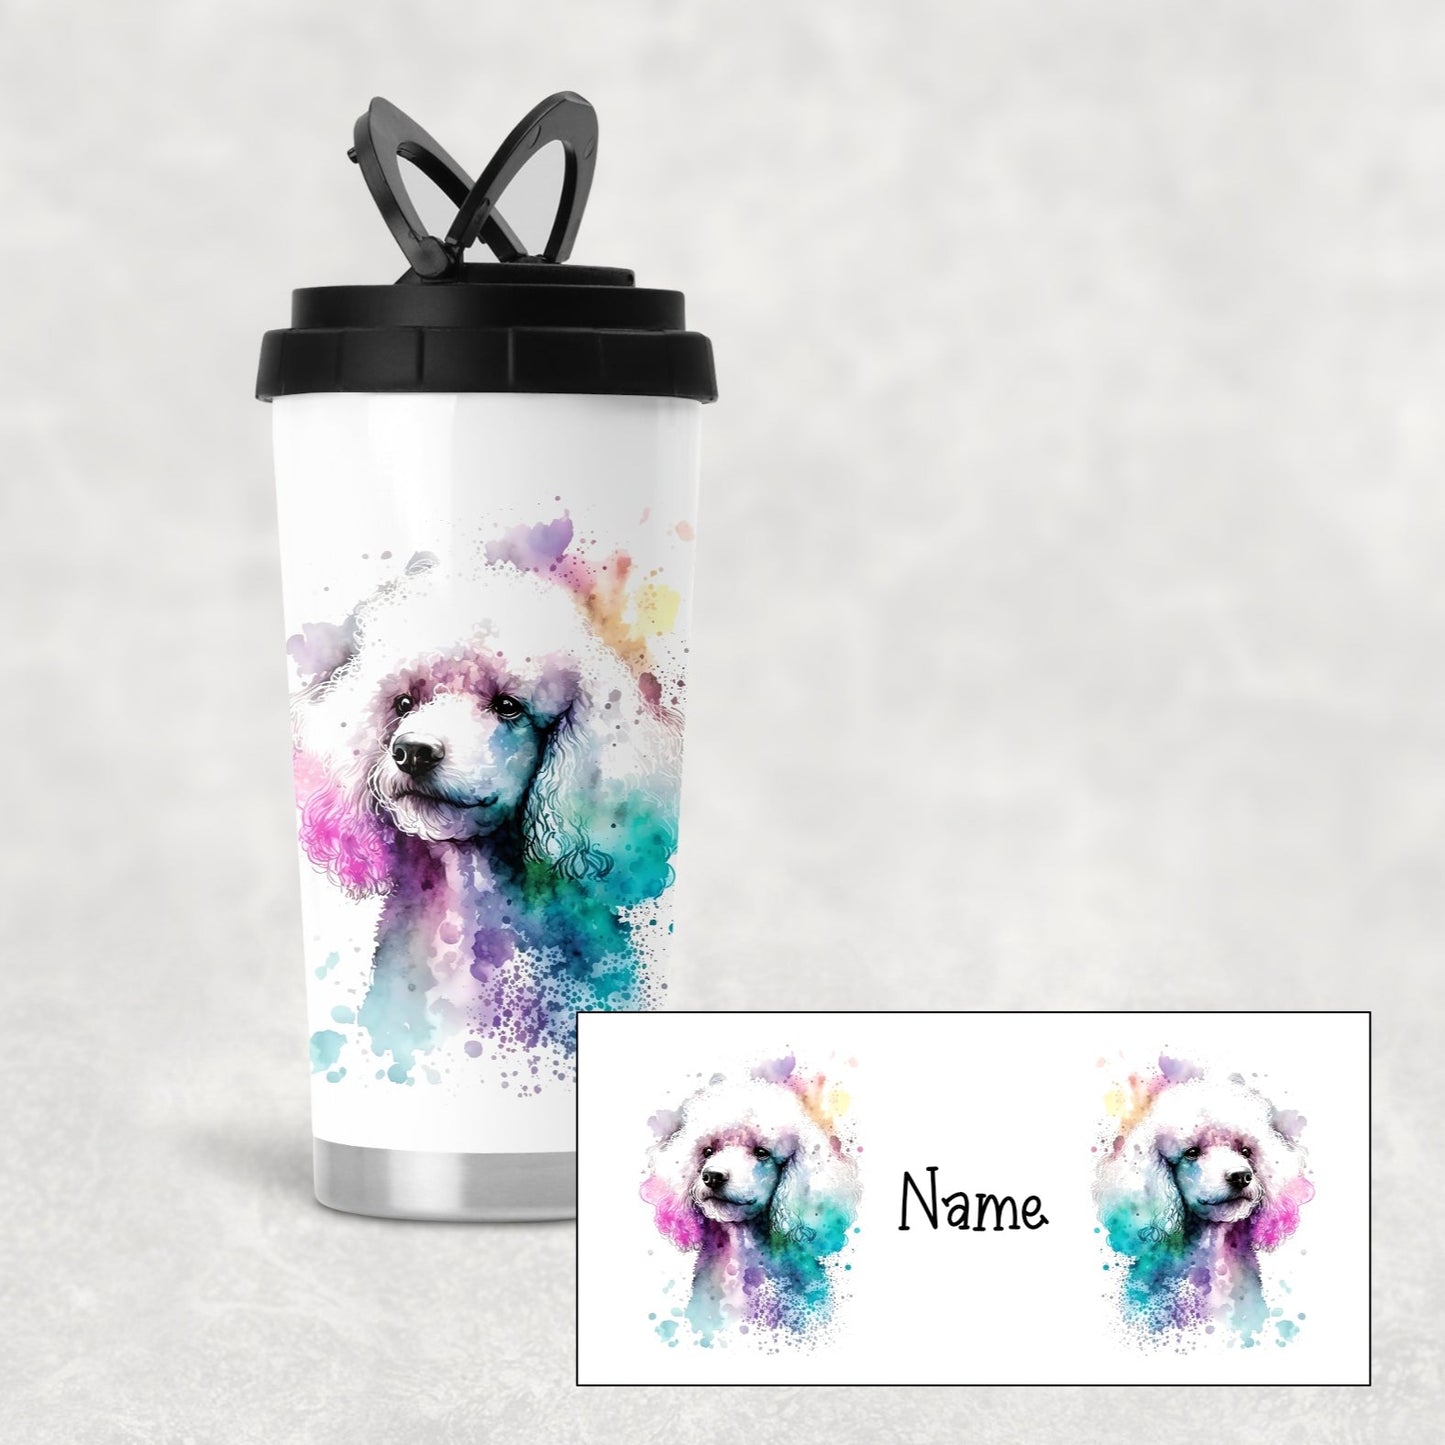 Poodle personalised travel mug - Insulated mug